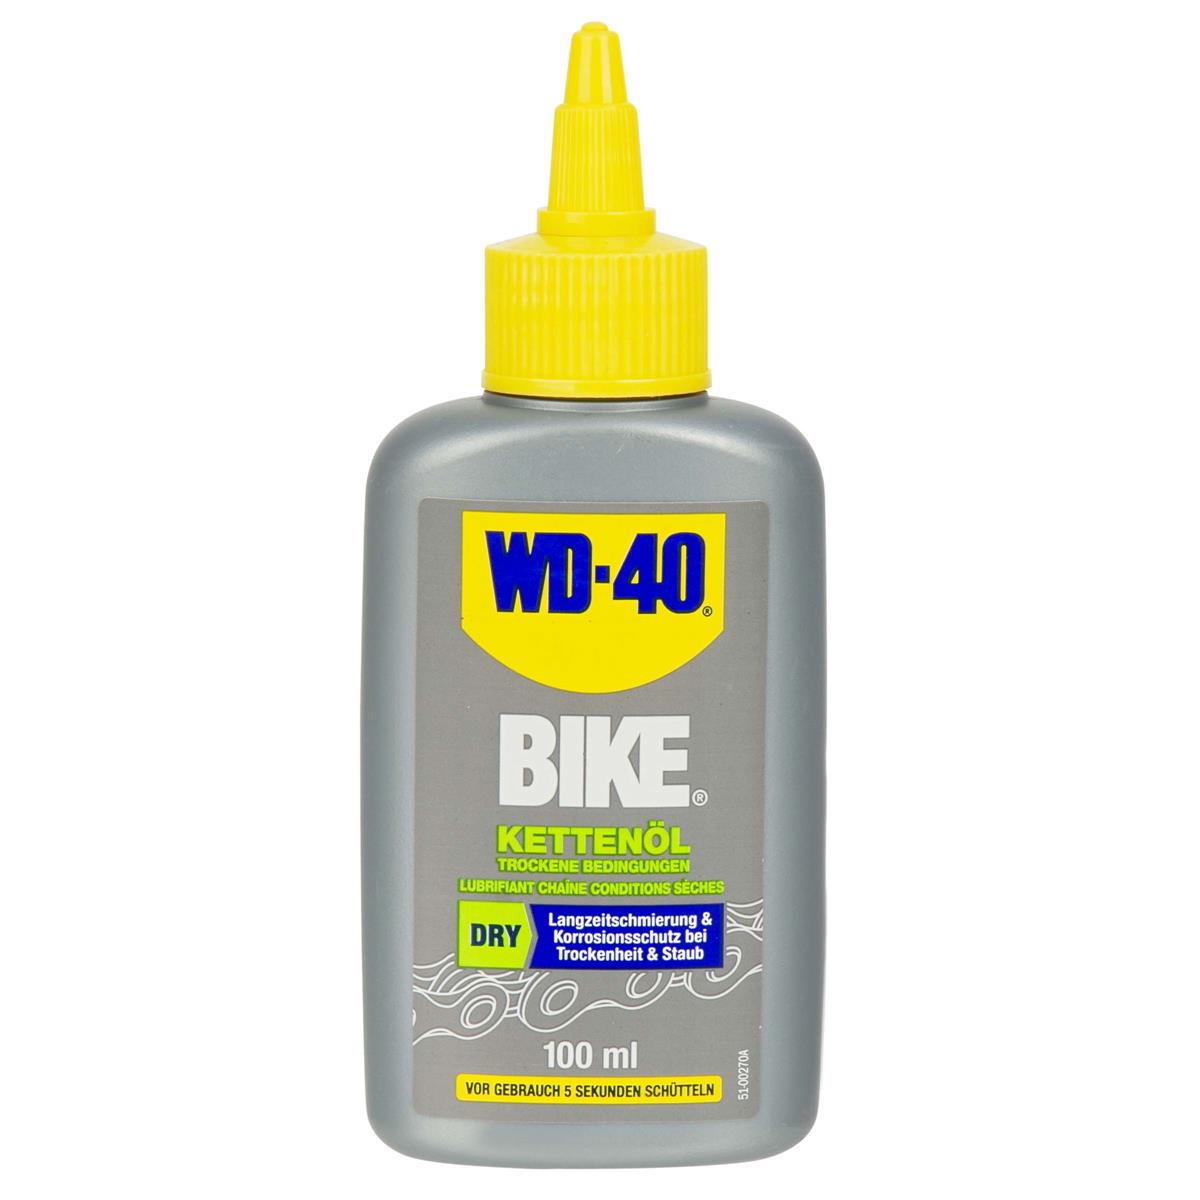 WD-40 Kettenöl Bike Dry, 100 ml